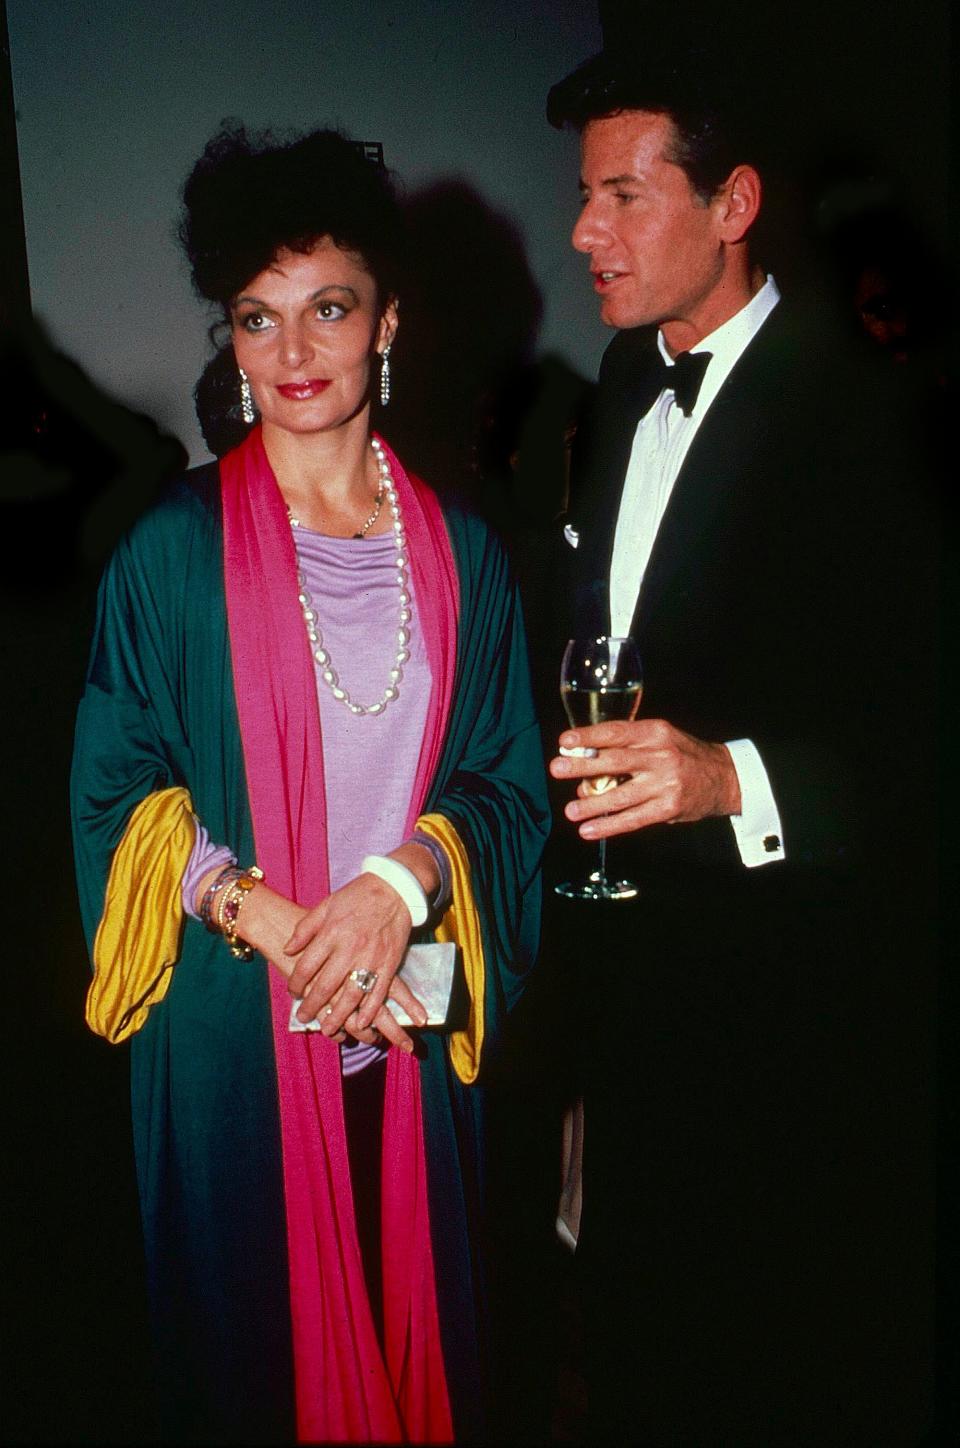 Diane von Furstenberg and Calvin Klein at the 1988 Met Gala.